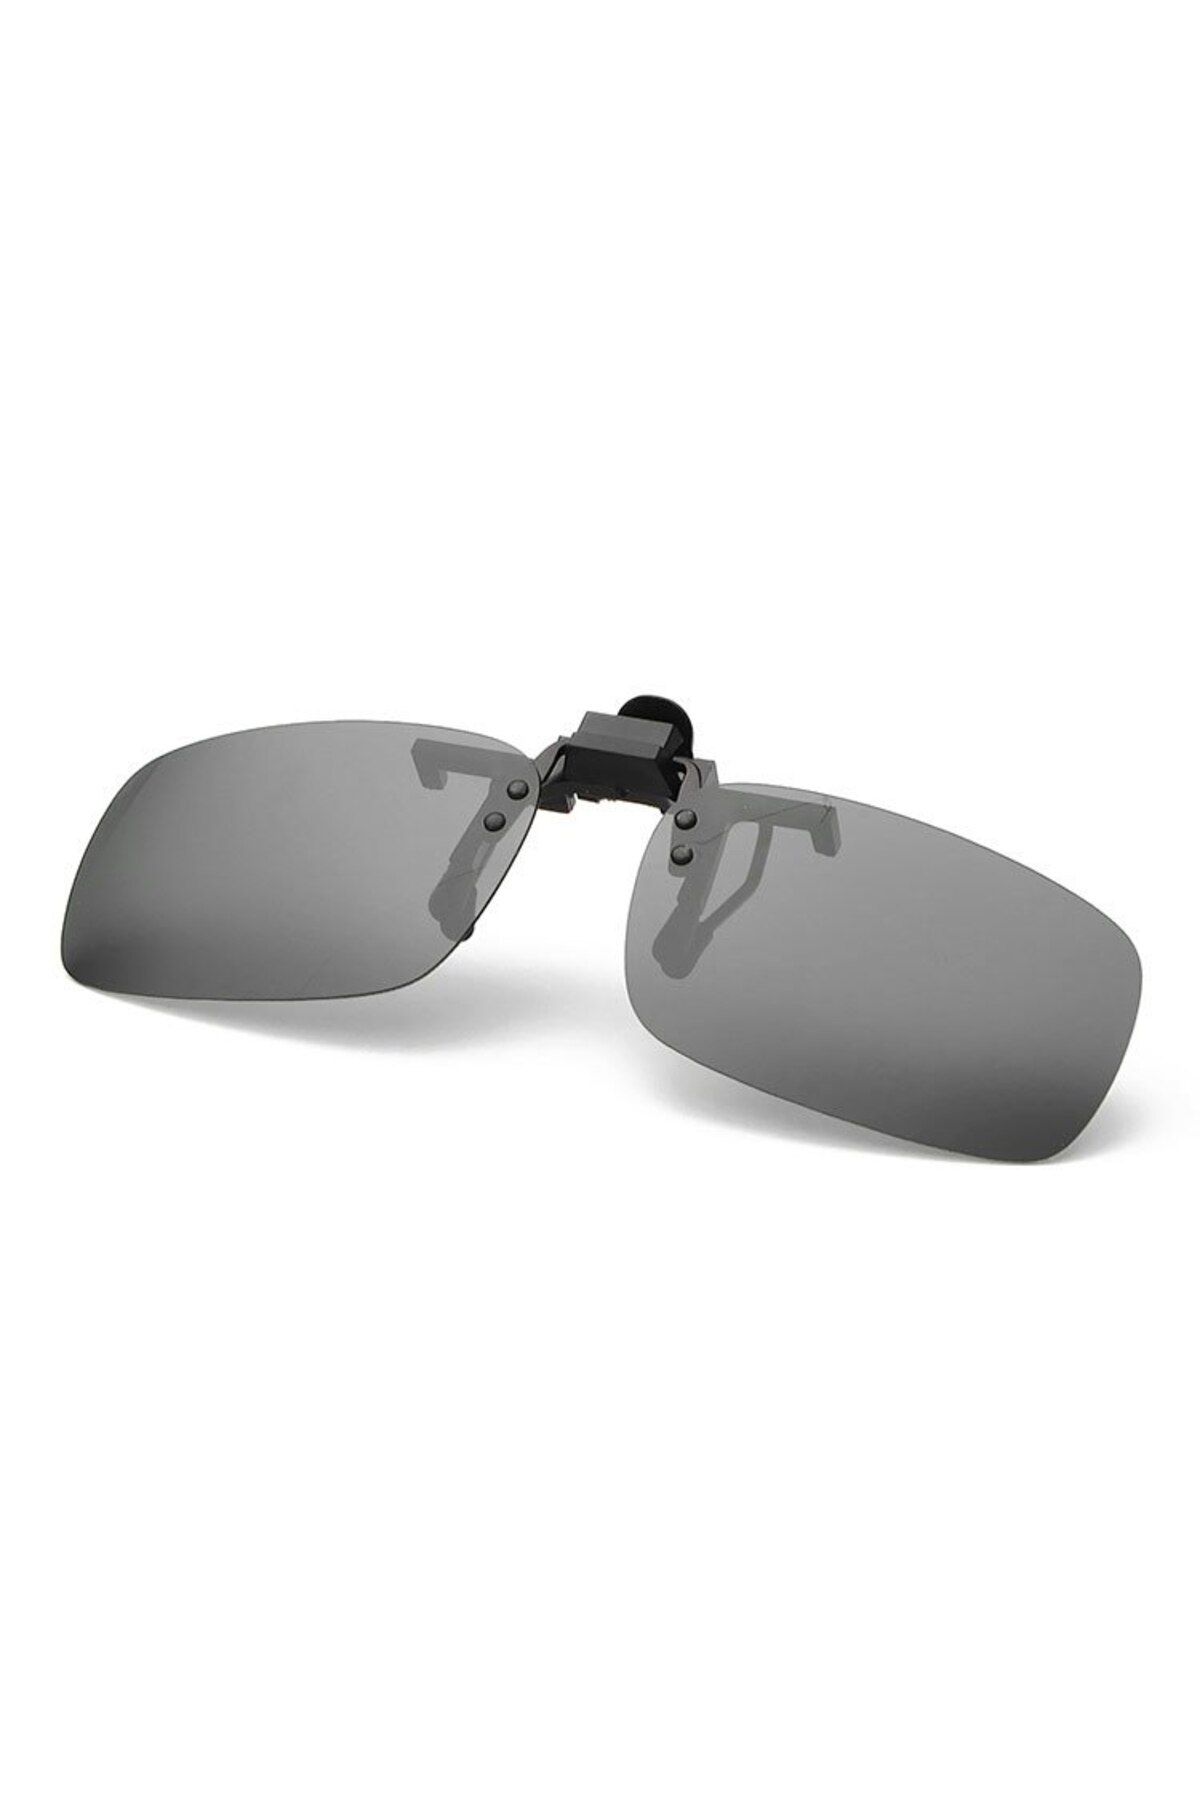 Müstesna Antifar Gözlük Üstü Güneş Gözlüğü Klipsi Clip On Güneş Gözlüğü Modelleri